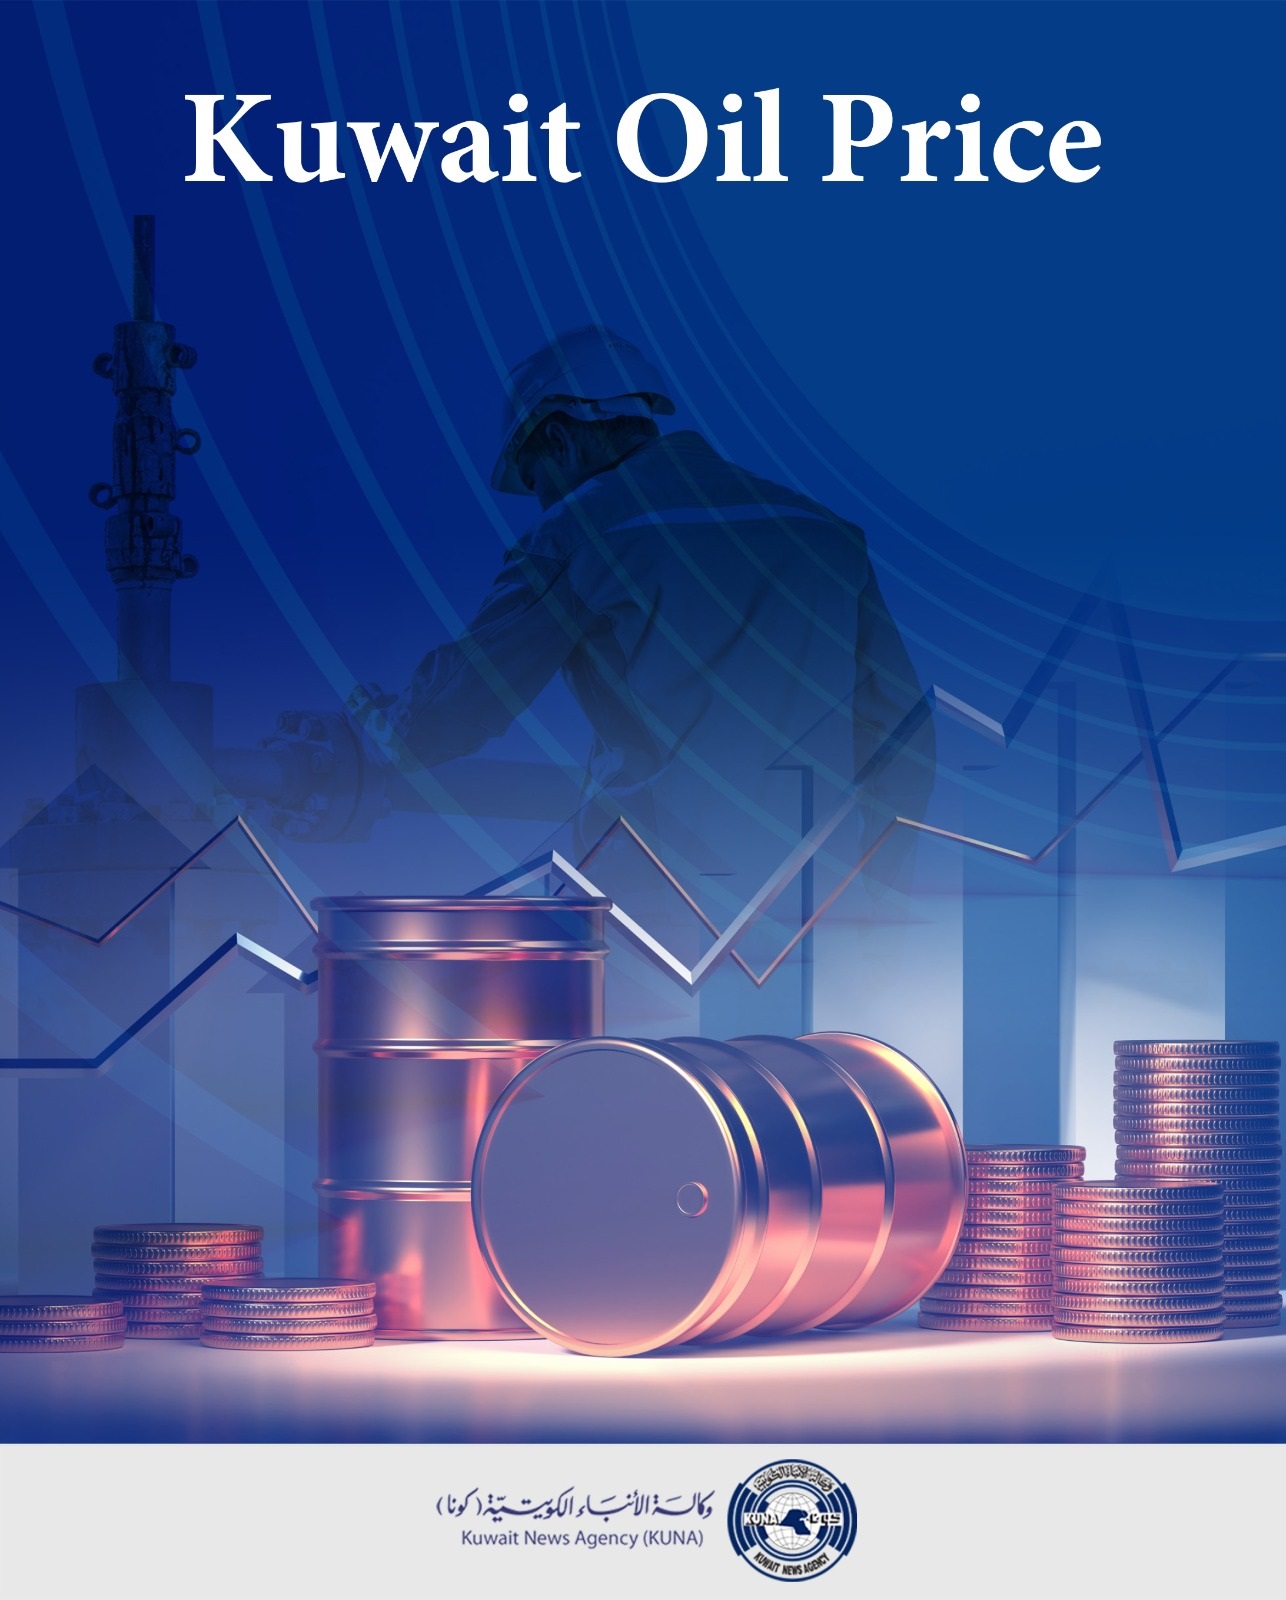 Kuwait oil price dipps USD 1.60 to USD 84.71 pb                                                                                                                                                                                                           